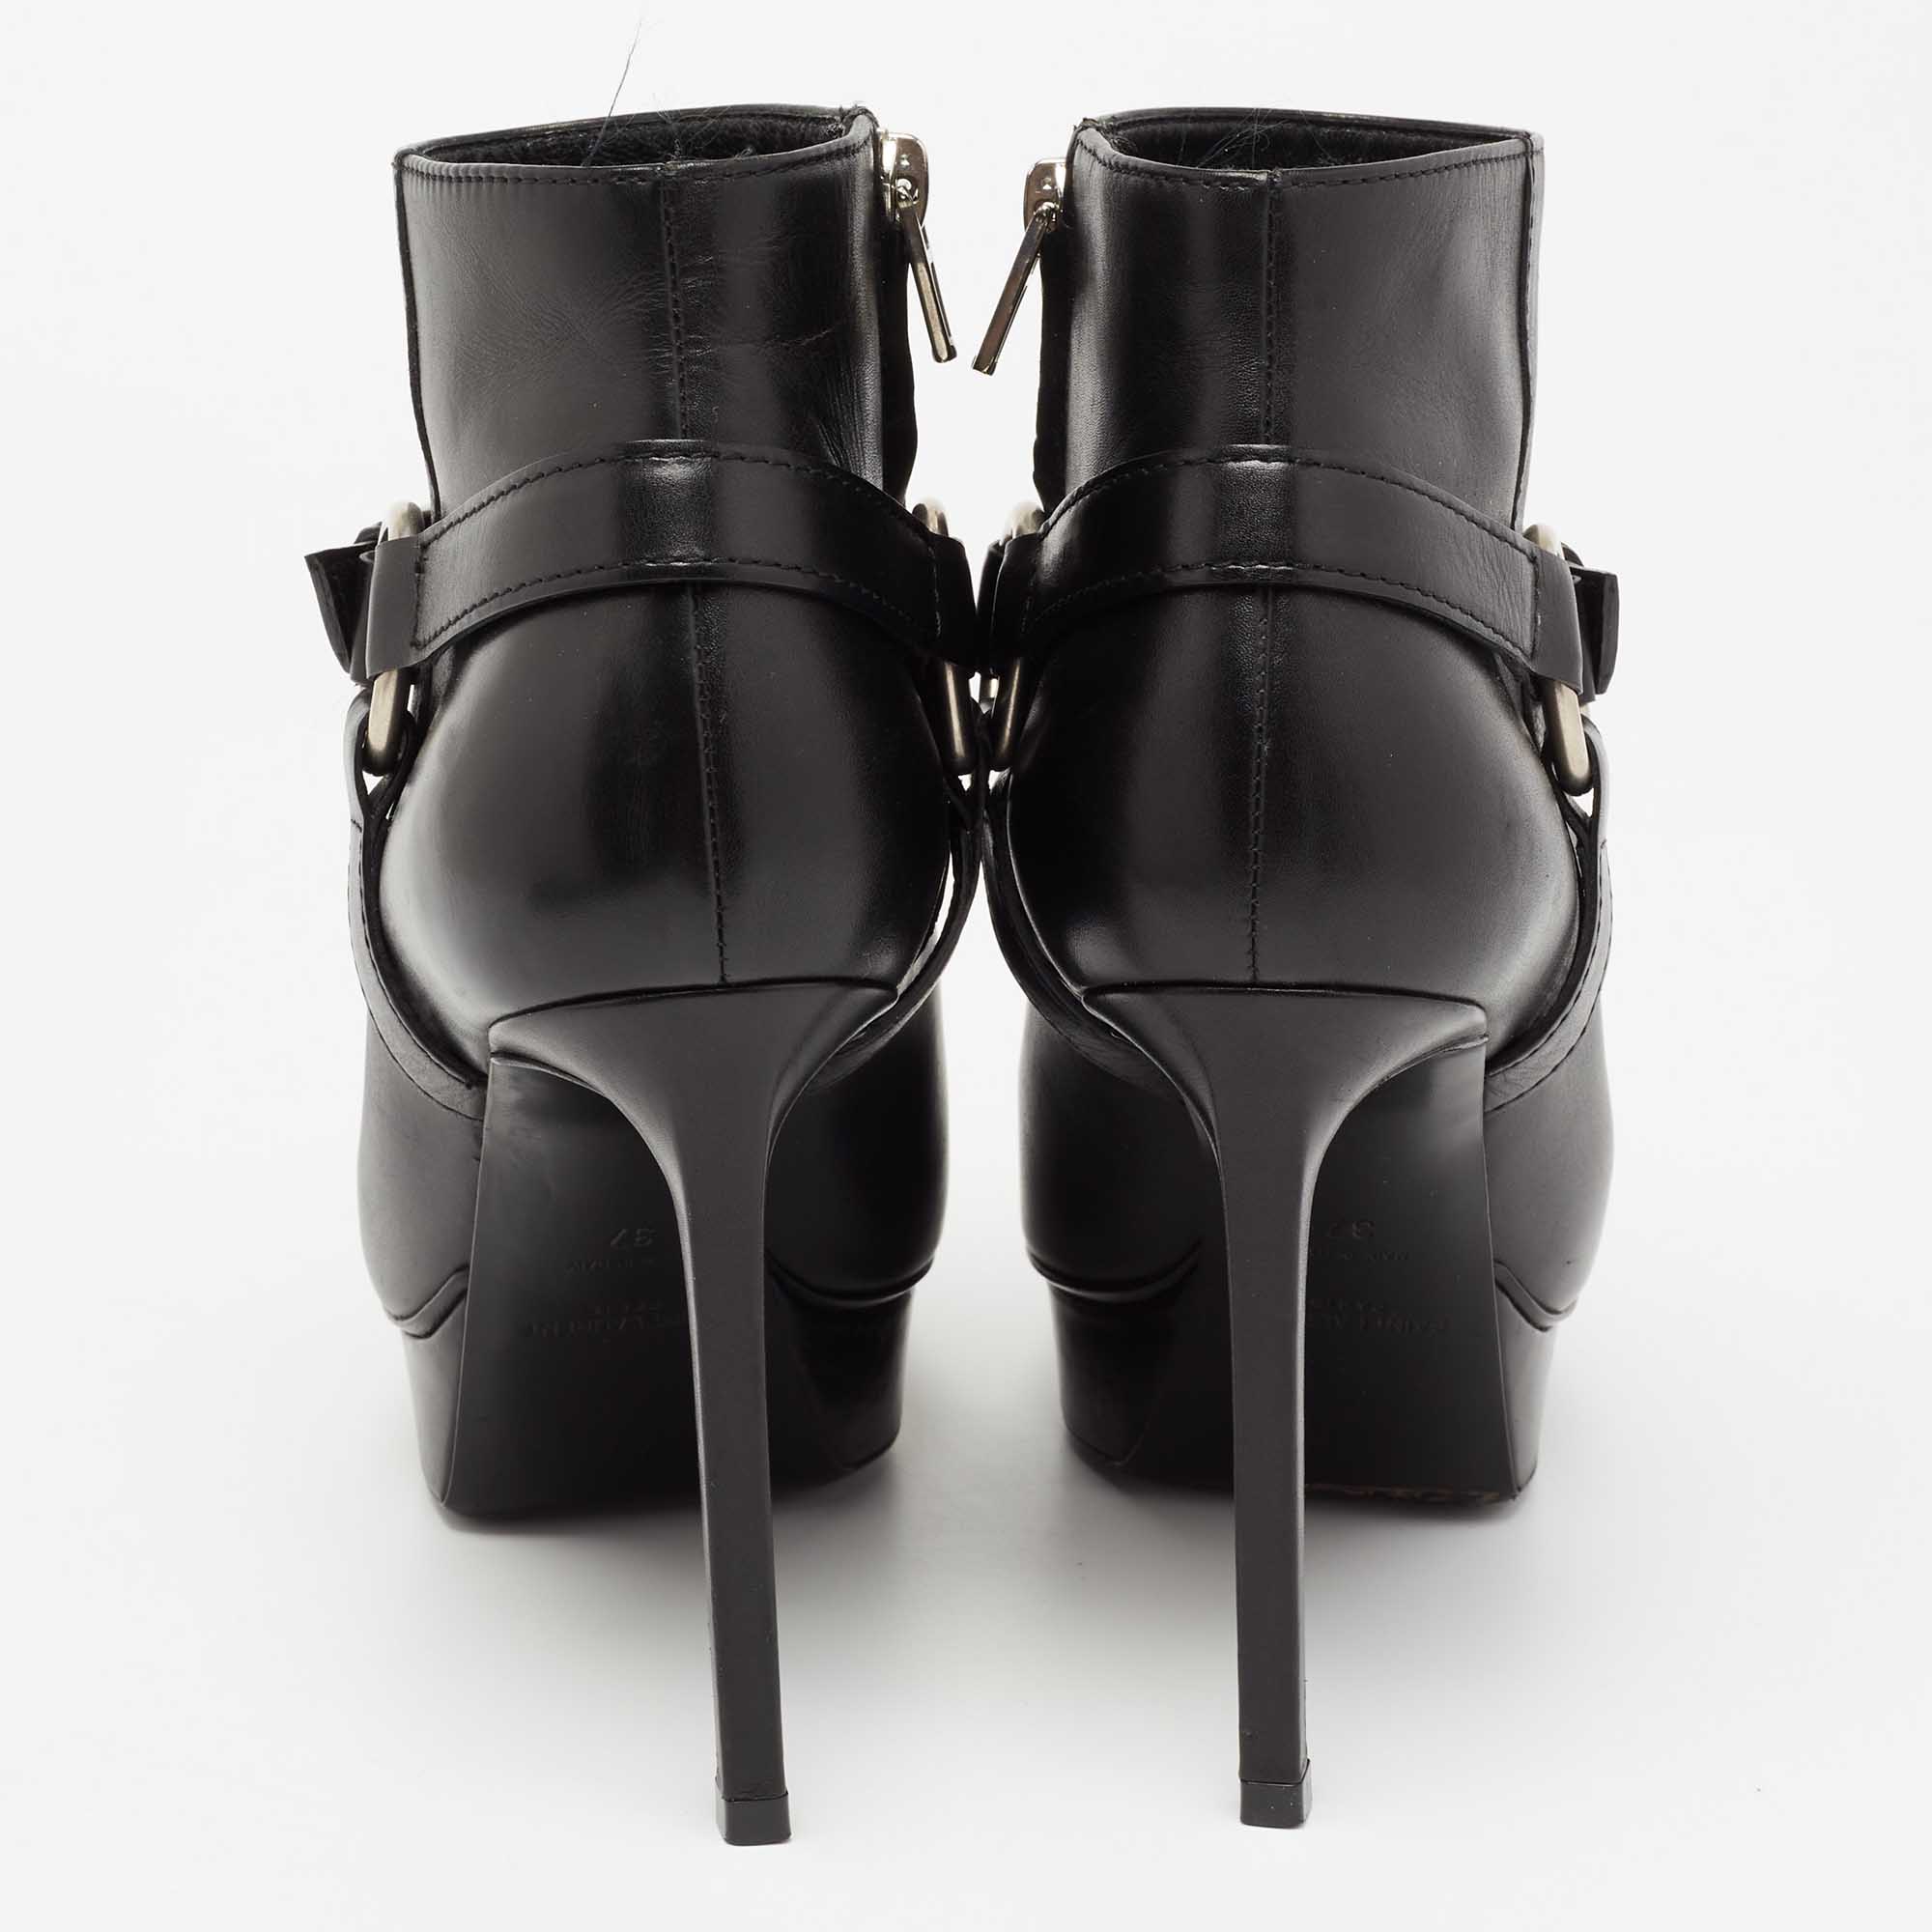 Saint Laurent Black Leather Platform Ankle Boots Size 37